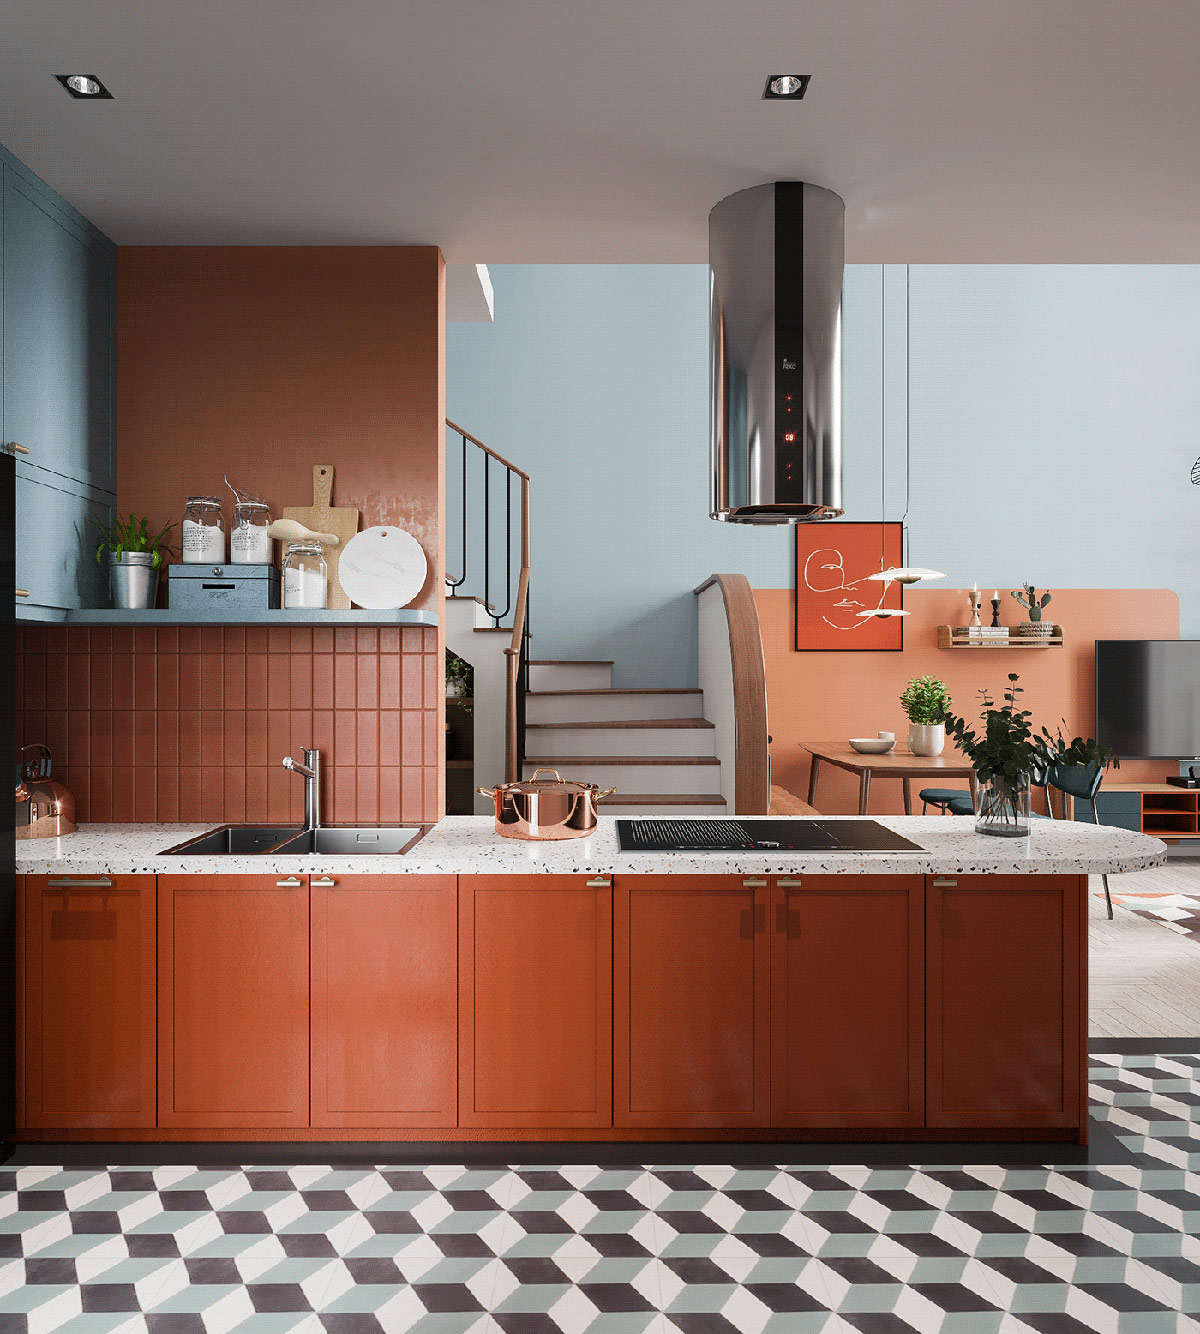 Phòng bếp lấy màu cam làm chủ đạo cho cái nhìn trẻ trung và đầy cảm hứng, thêm chút sắc xanh lam dịu nhẹ trên bức tường để trung hòa cảm giác nóng nực trong khu vực dành cho chức năng nấu nướng.